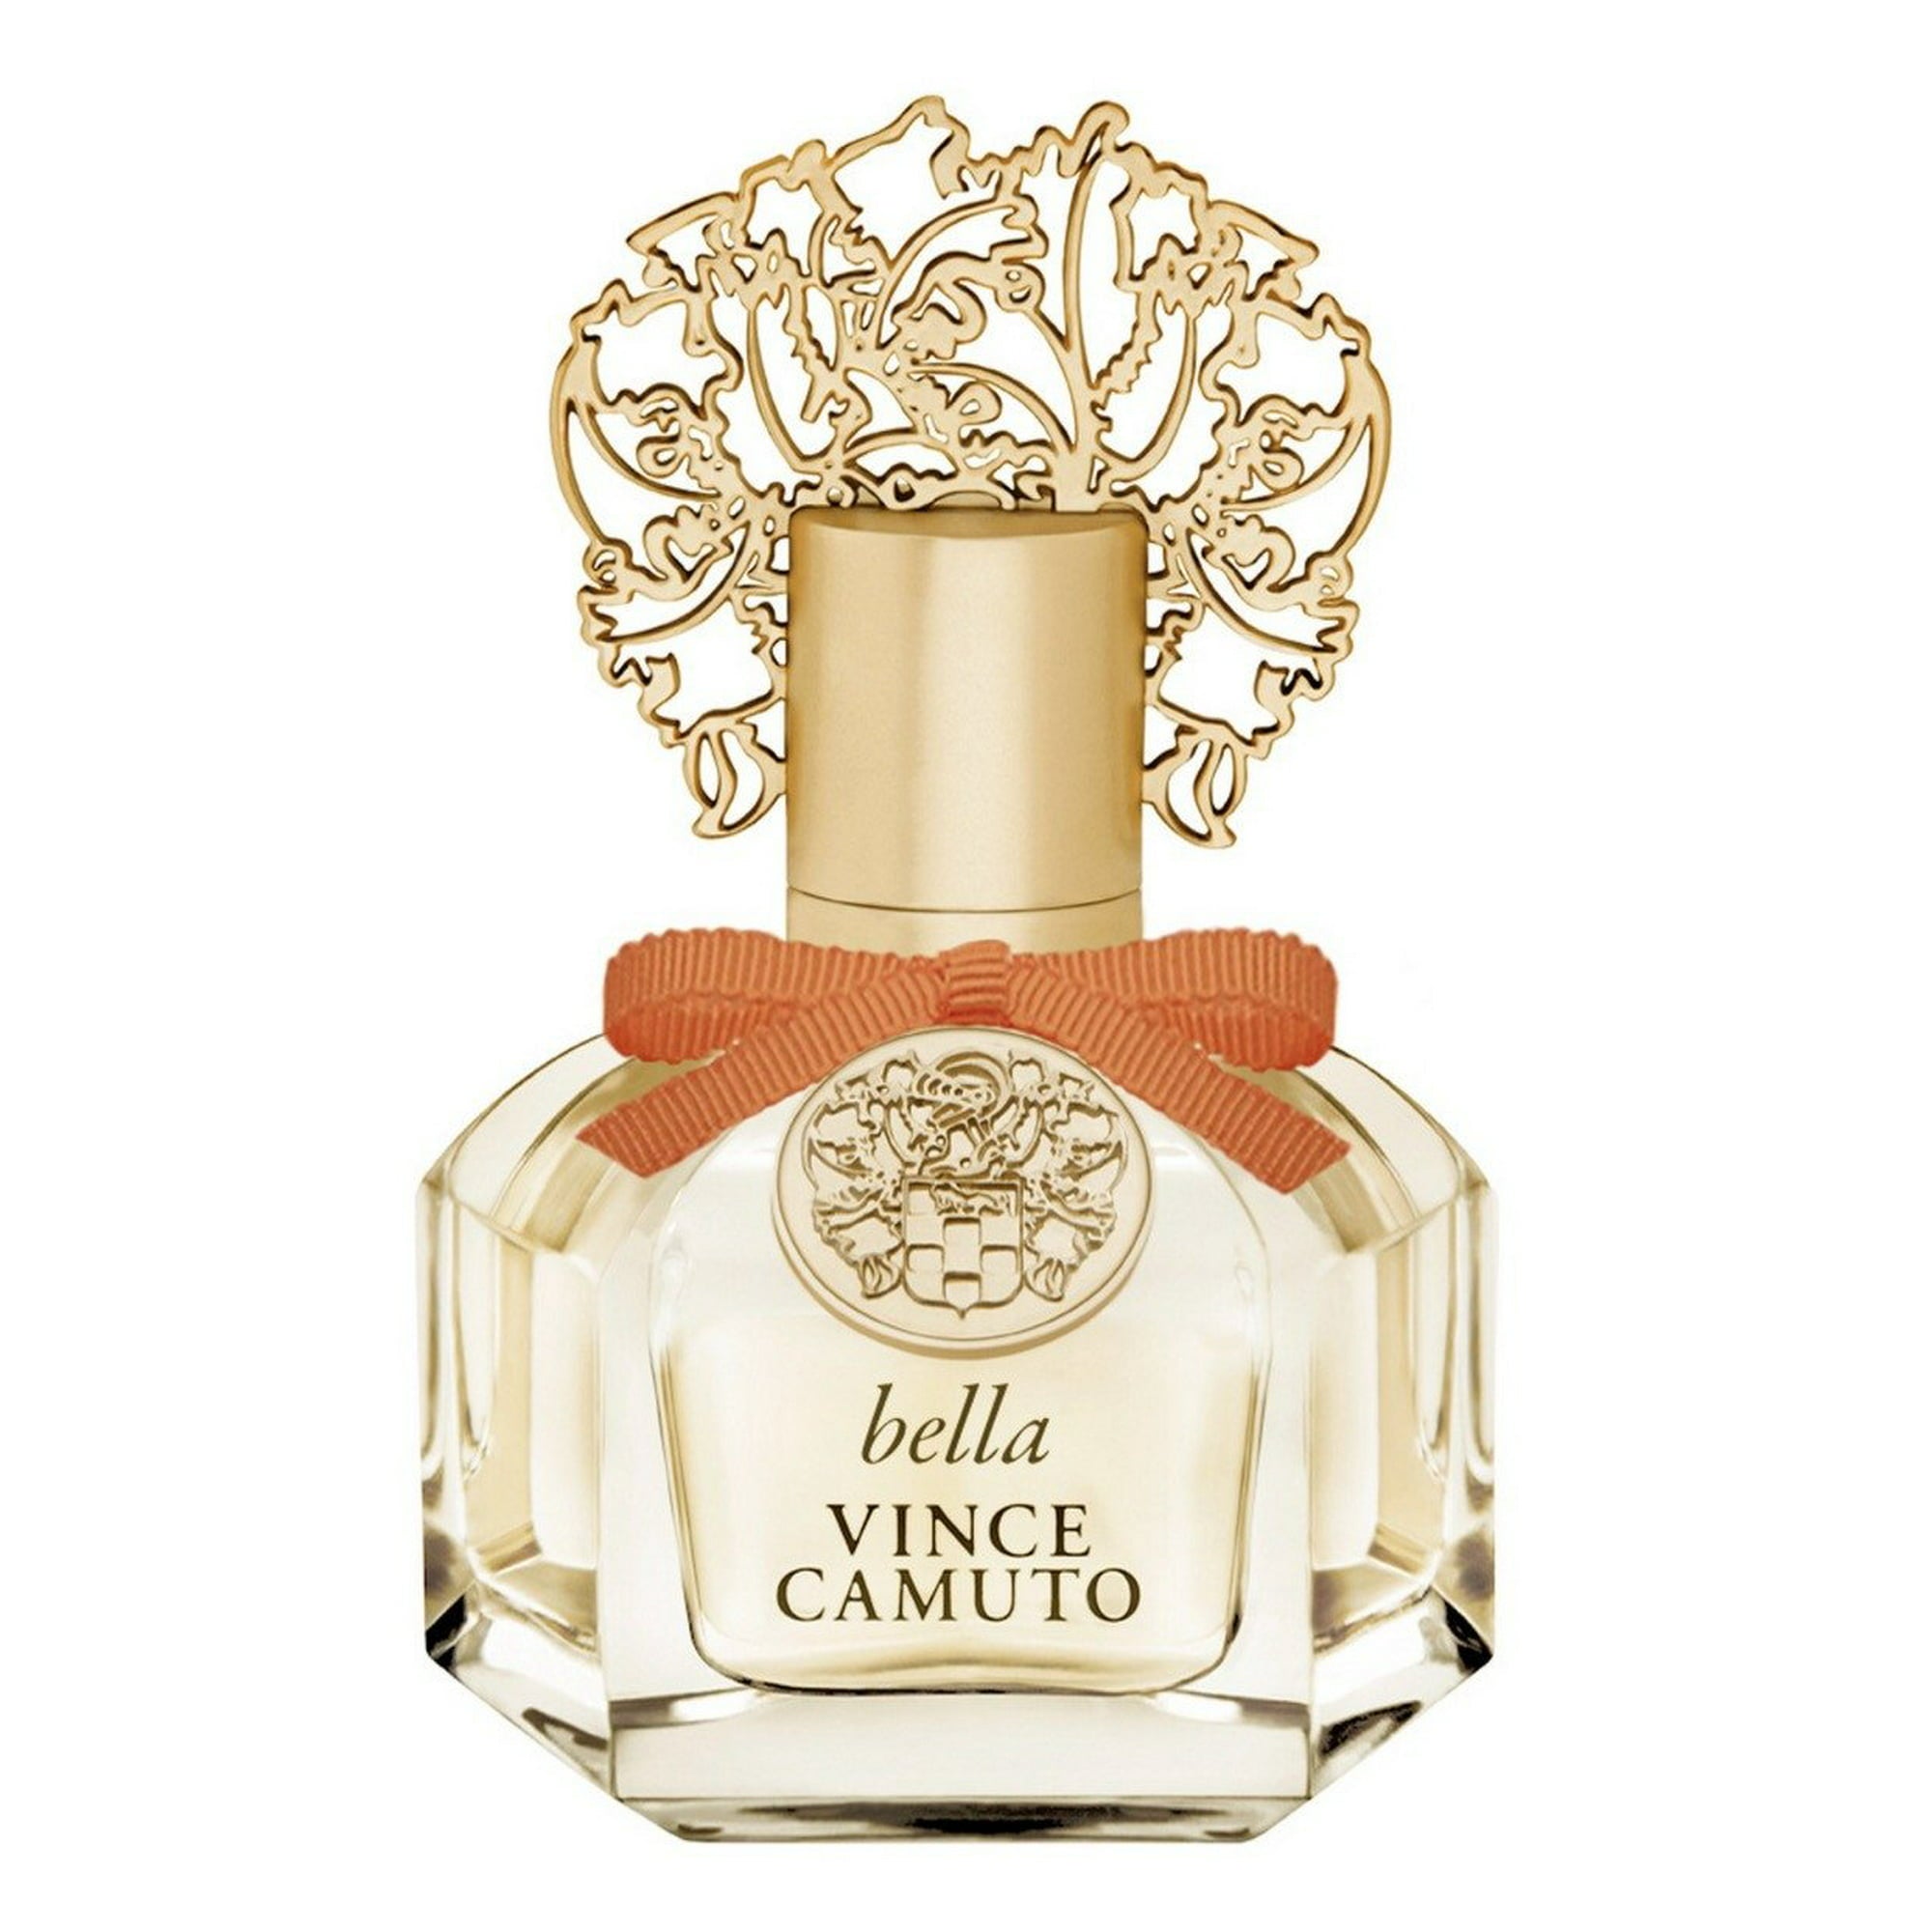 Vince Camuto Fiori 3.4oz Women's Eau de Parfum for sale online